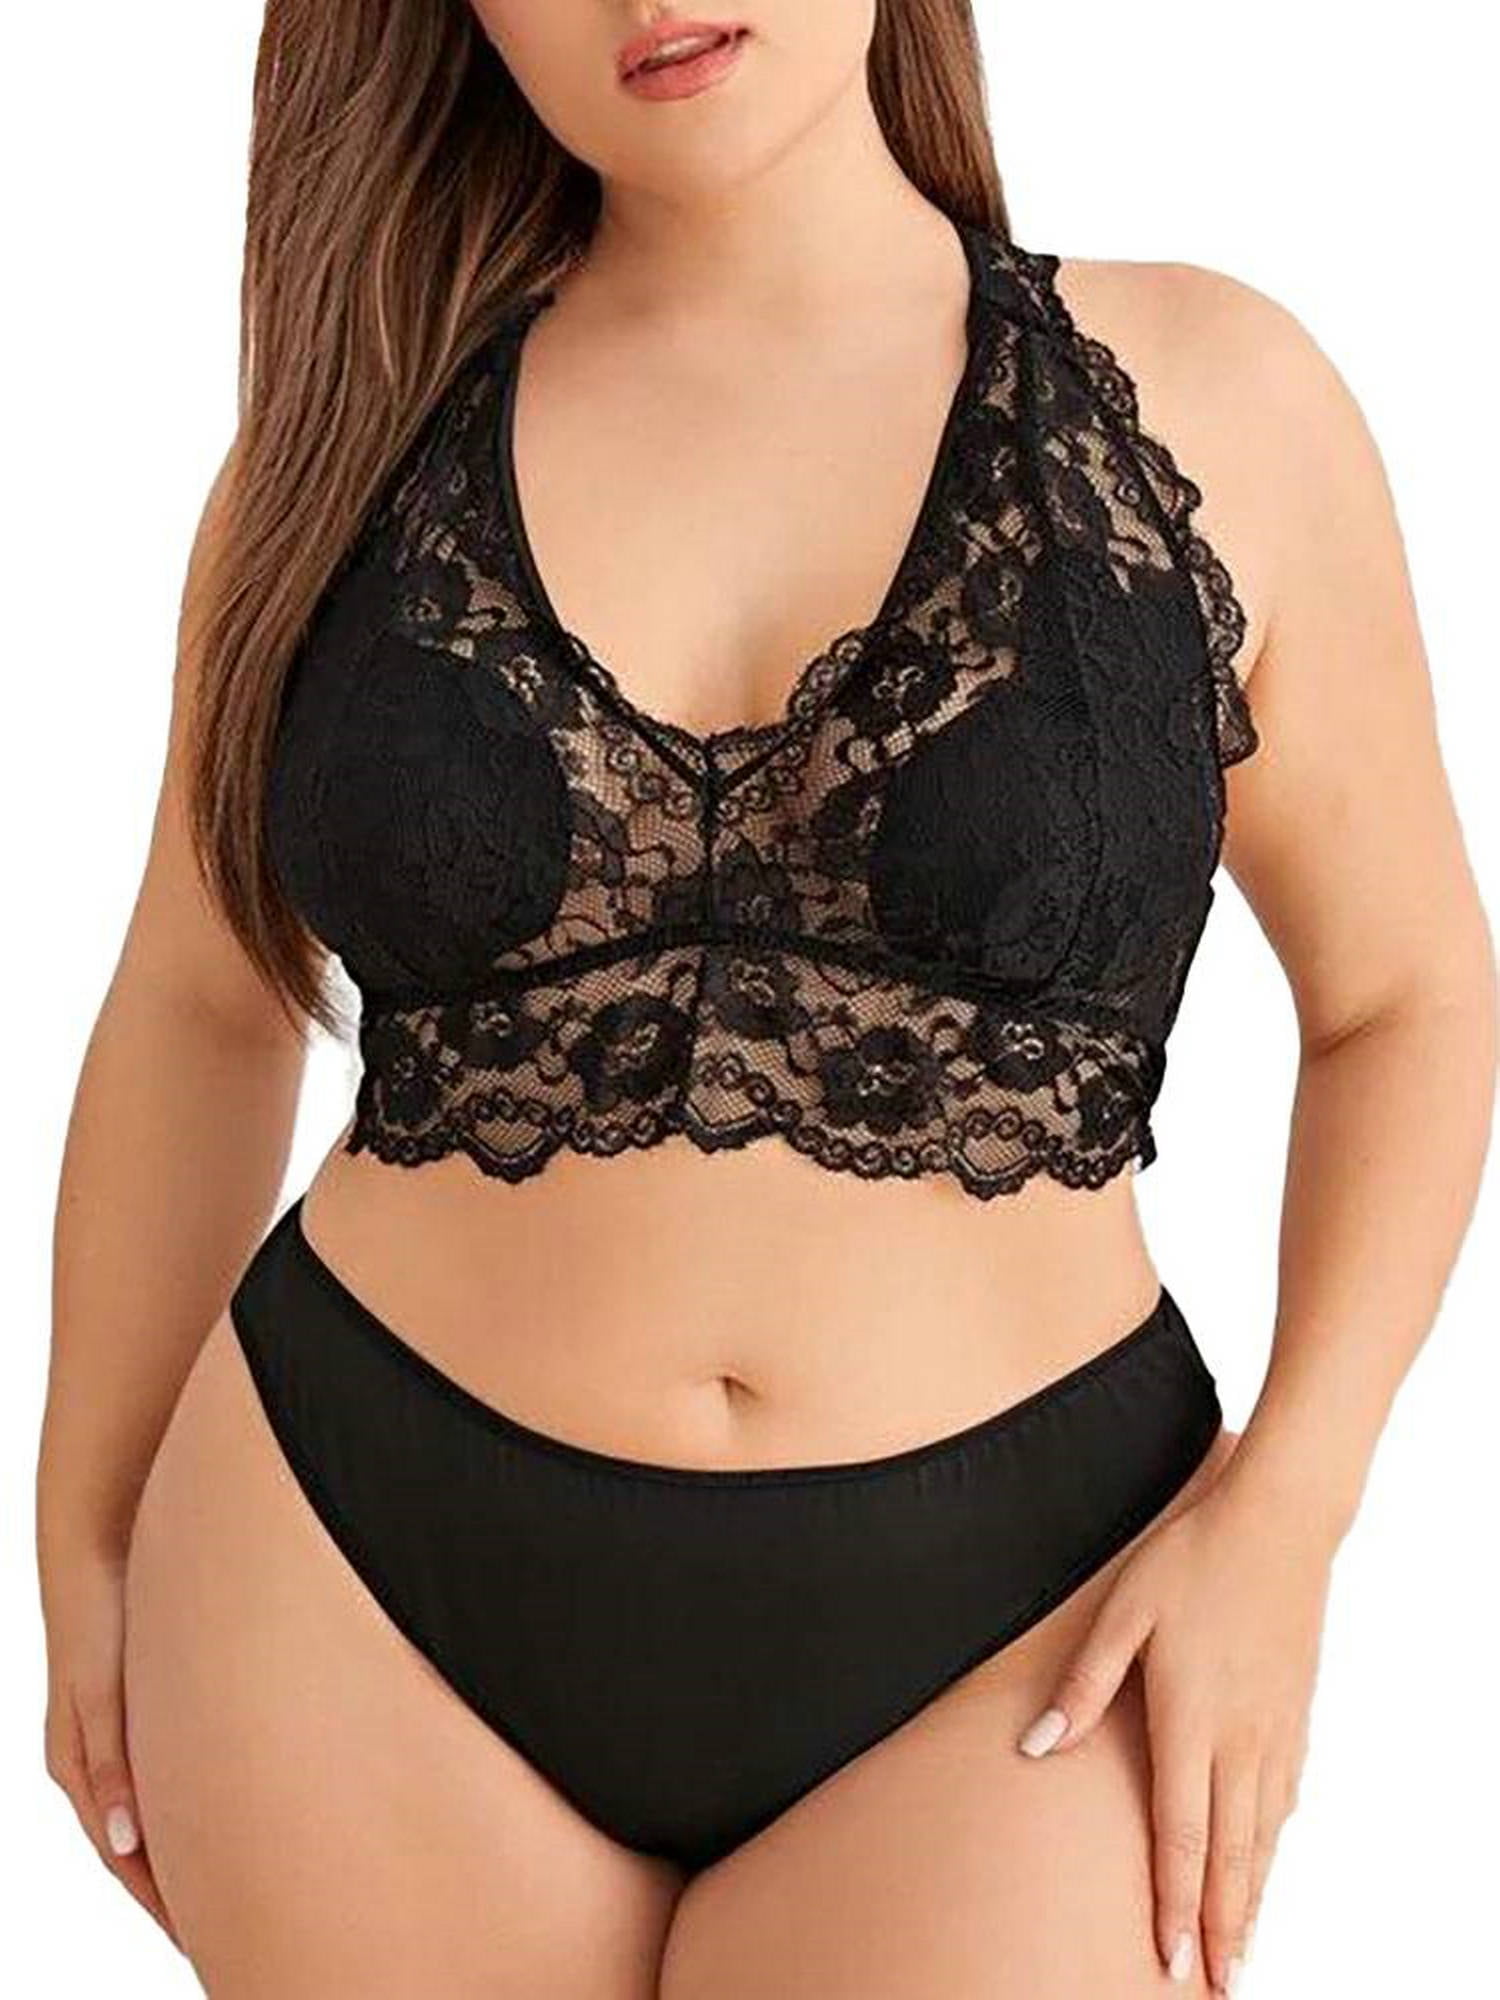 Plus Size Halter Lace Lingerie Set For Women Sexy Plus Size Bras